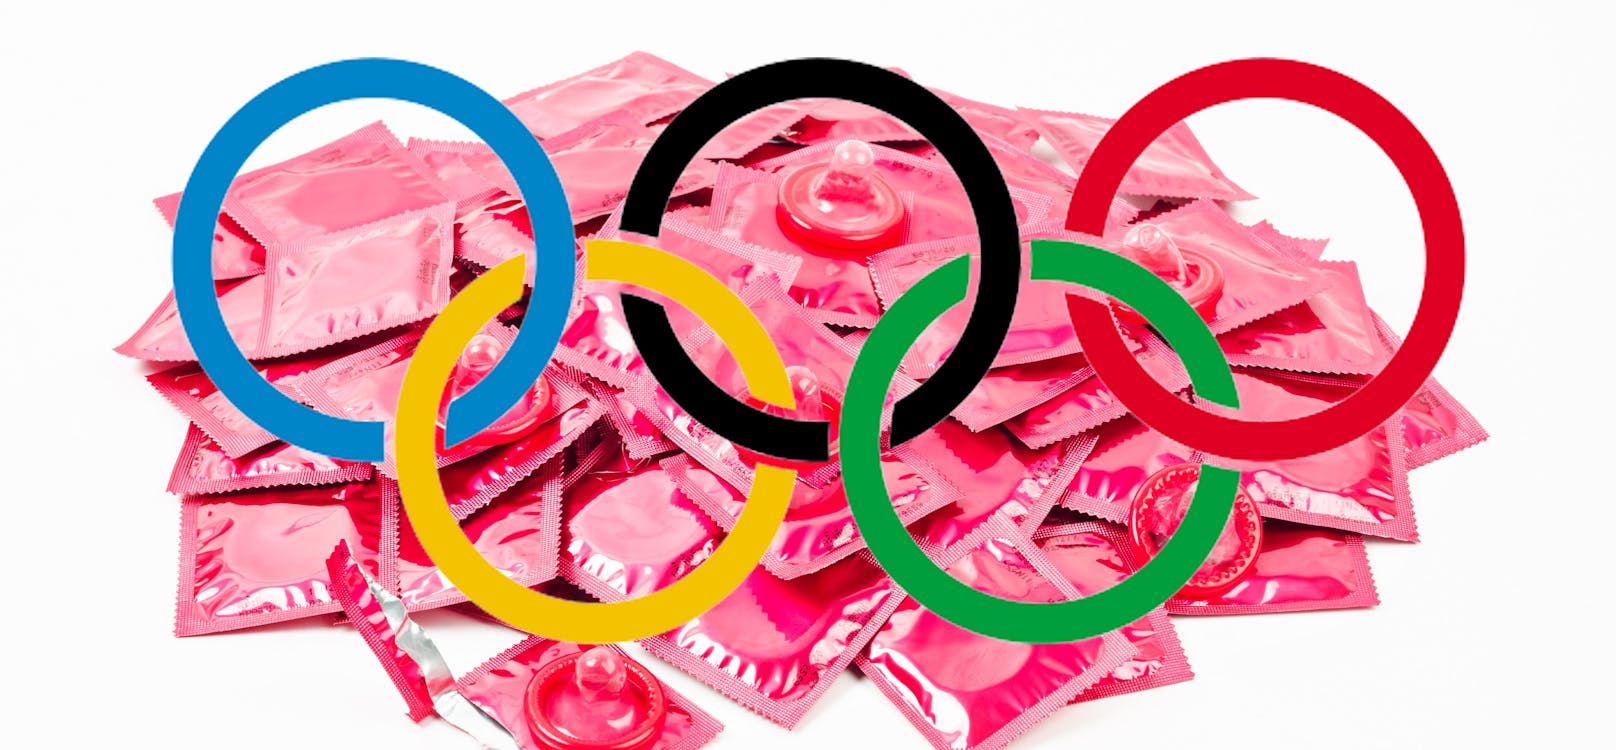 Die Olympia-Teilnehmer erhalten ihre Kondome erst bei der Abreise.&nbsp;